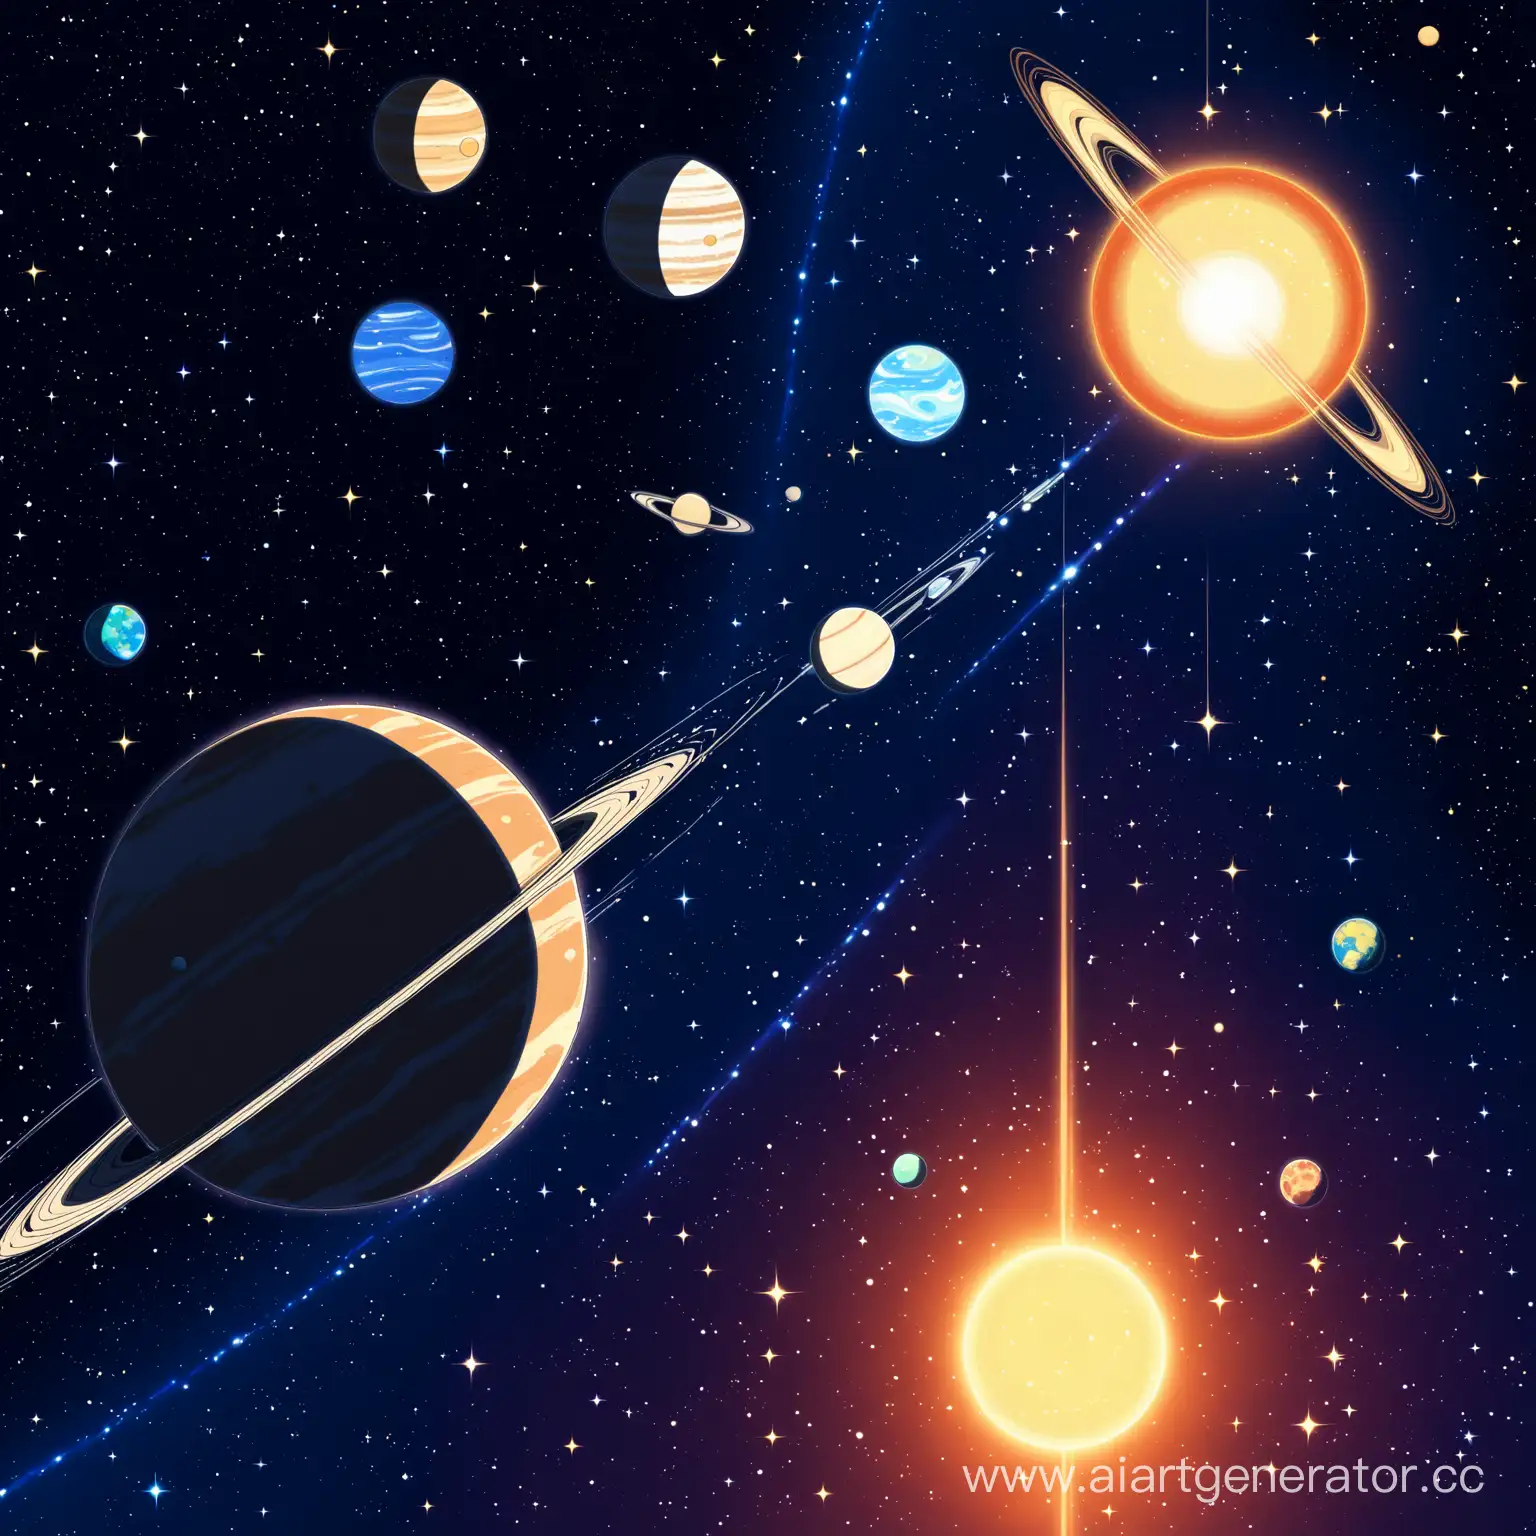 звездная космическая система из солнца и трех планет в стиле аниме